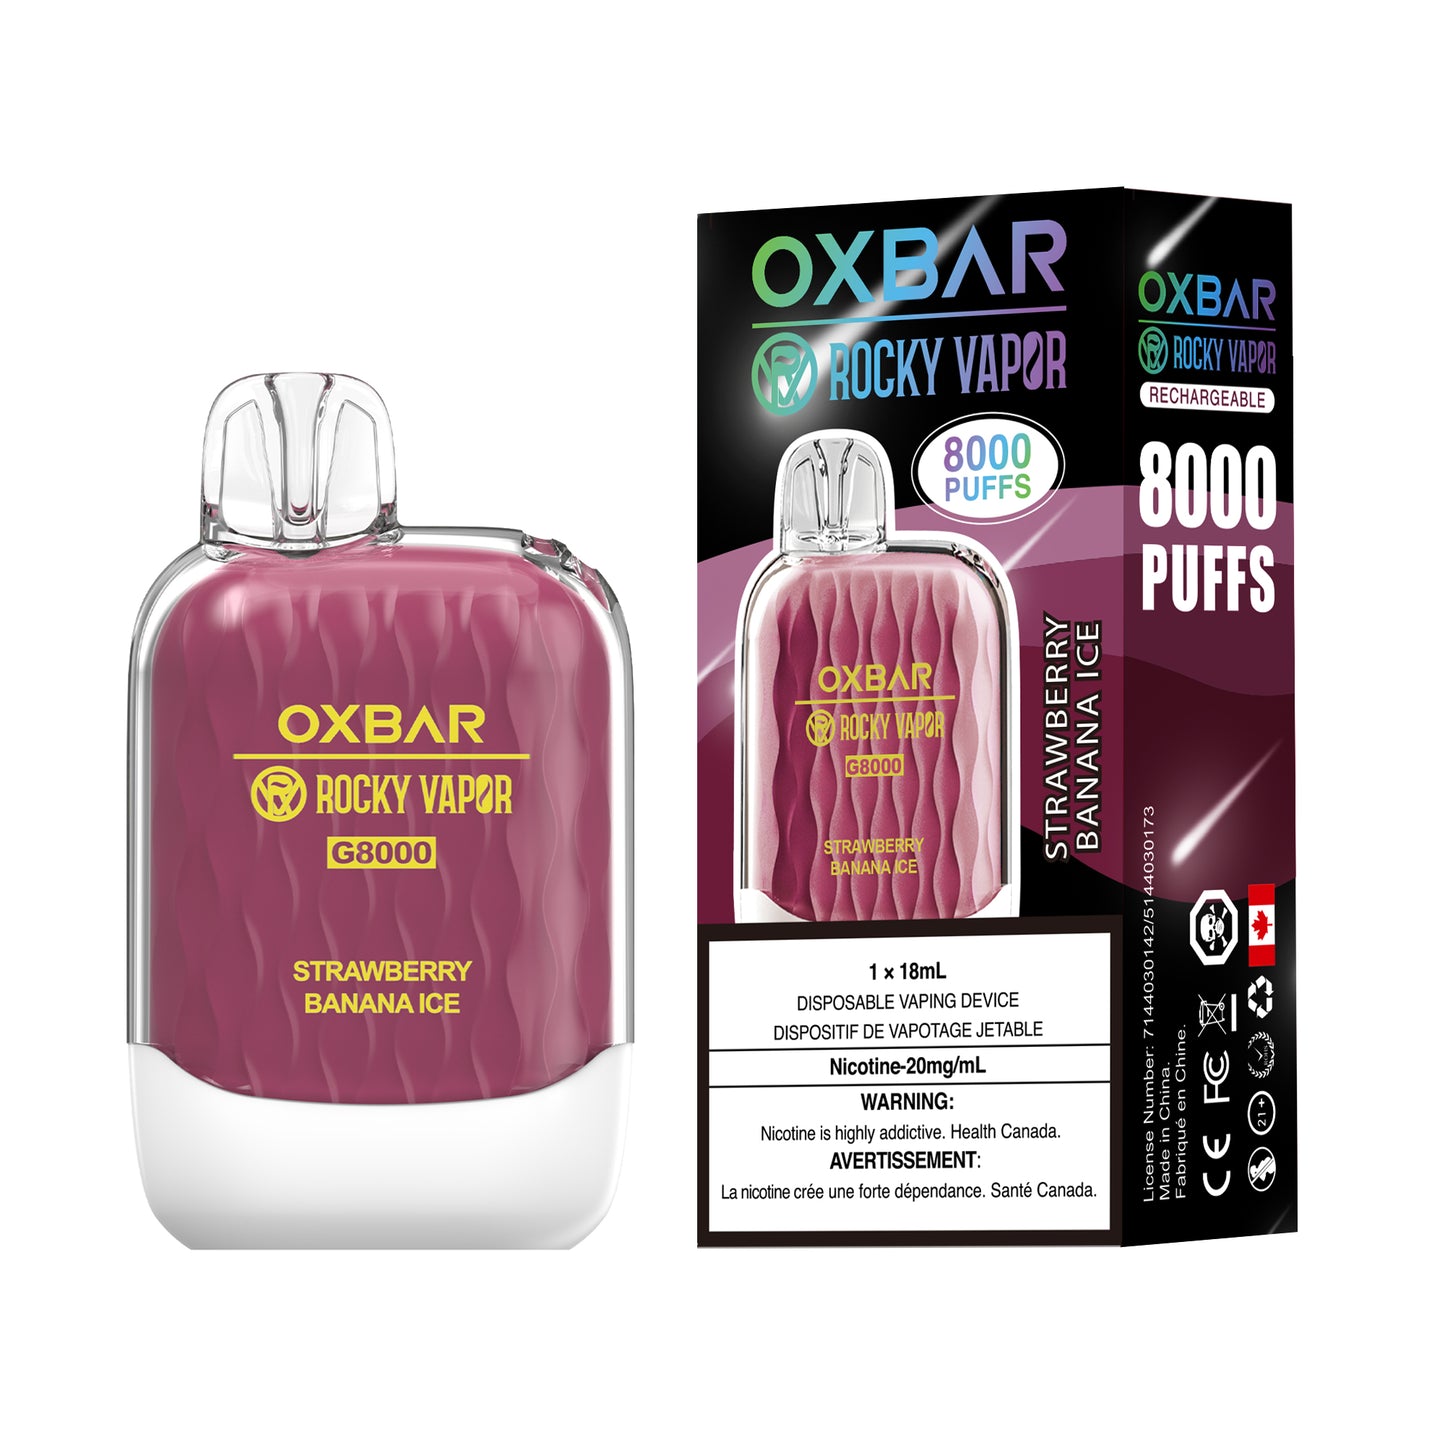 OXBAR G8000 - Strawberry Banana Ice (Pack of 5)